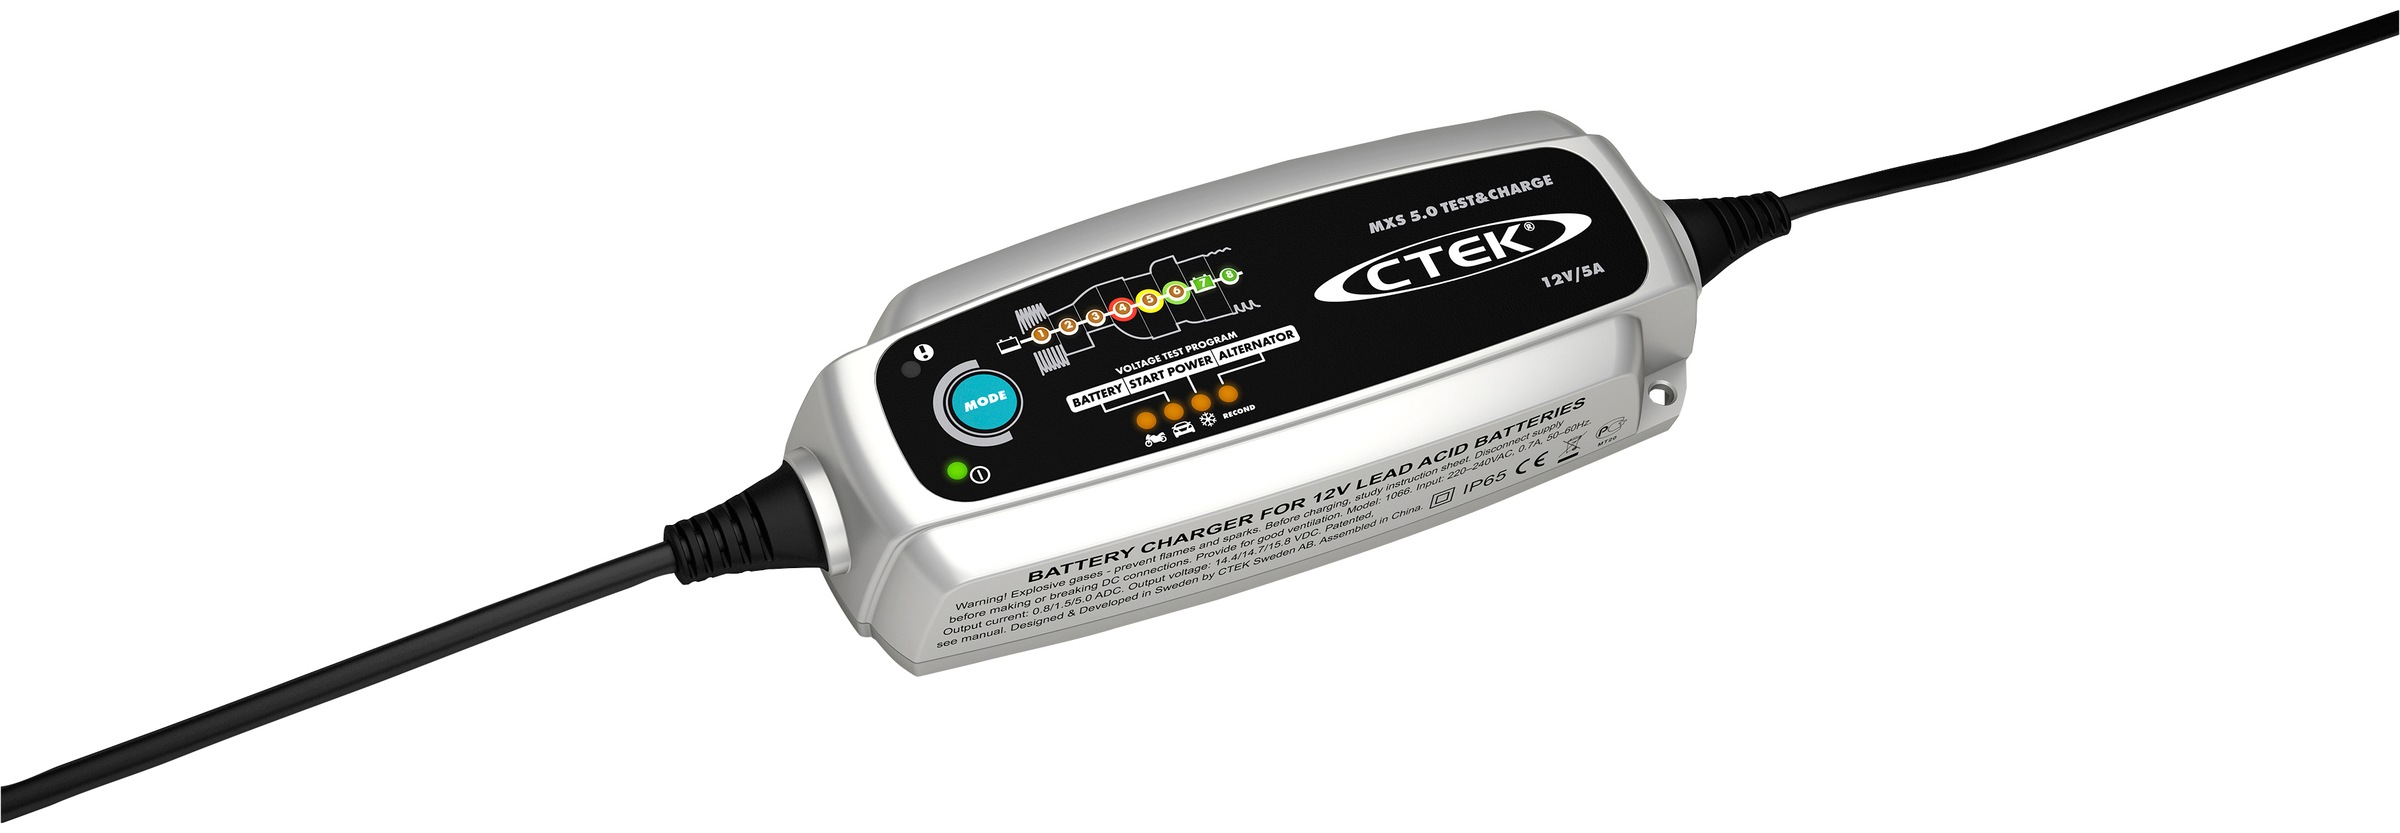 CTEK Batterie-Ladegerät »MXS 5.0 Test & Charge«, Spannung, Startleistung und Leistungsverhalten der Lichtmaschine